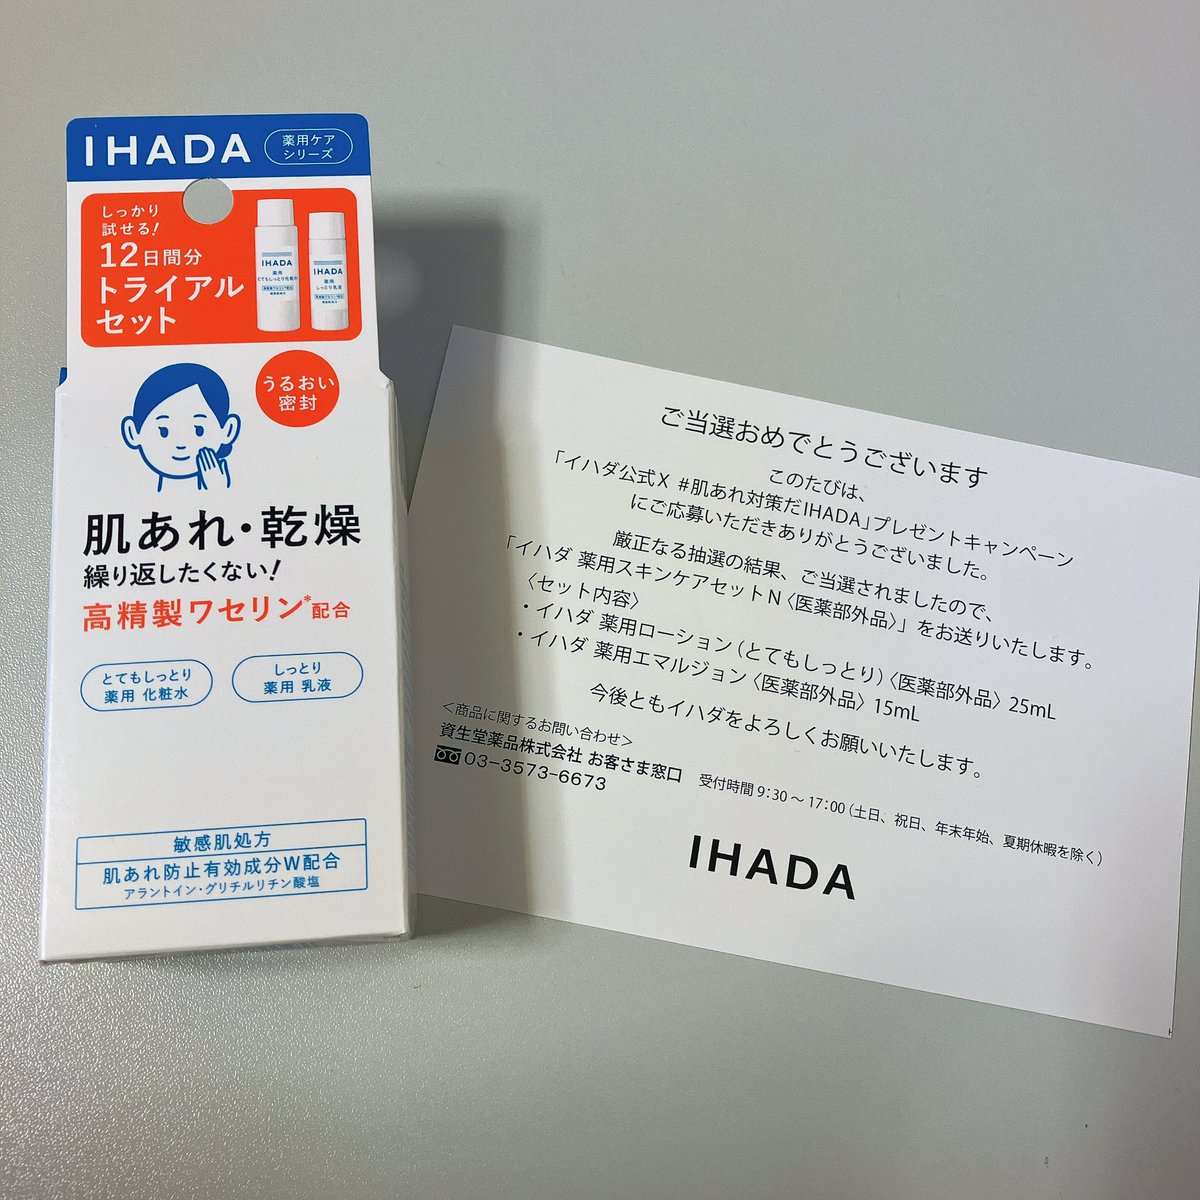 #肌あれ対策だIHADA
✨プレゼントキャンペーン✨

当選致しました！✨️

イハダ【公式】様(@IHADA_jp)
ありがとうございます😊

乾燥肌なのでとっても嬉しいです！
この冬大活躍の予感☺️
使用するのが楽しみです✨

#当選報告